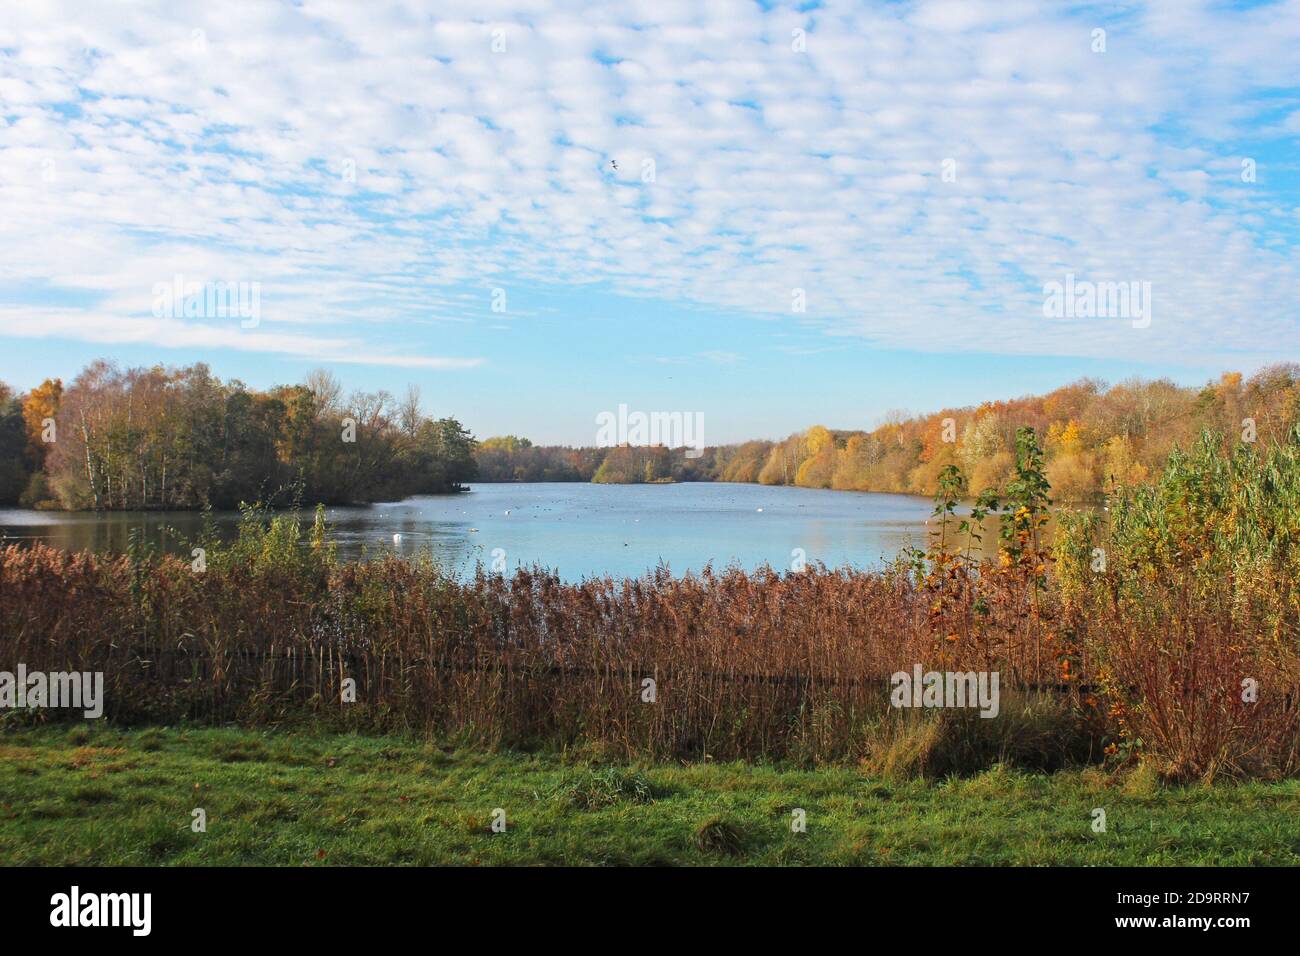 Magnifique paysage du parc aquatique Chorlton en Angleterre, grand lac bleu calme, ciel bleu, buissons d'automne et arbres sur les rives Banque D'Images